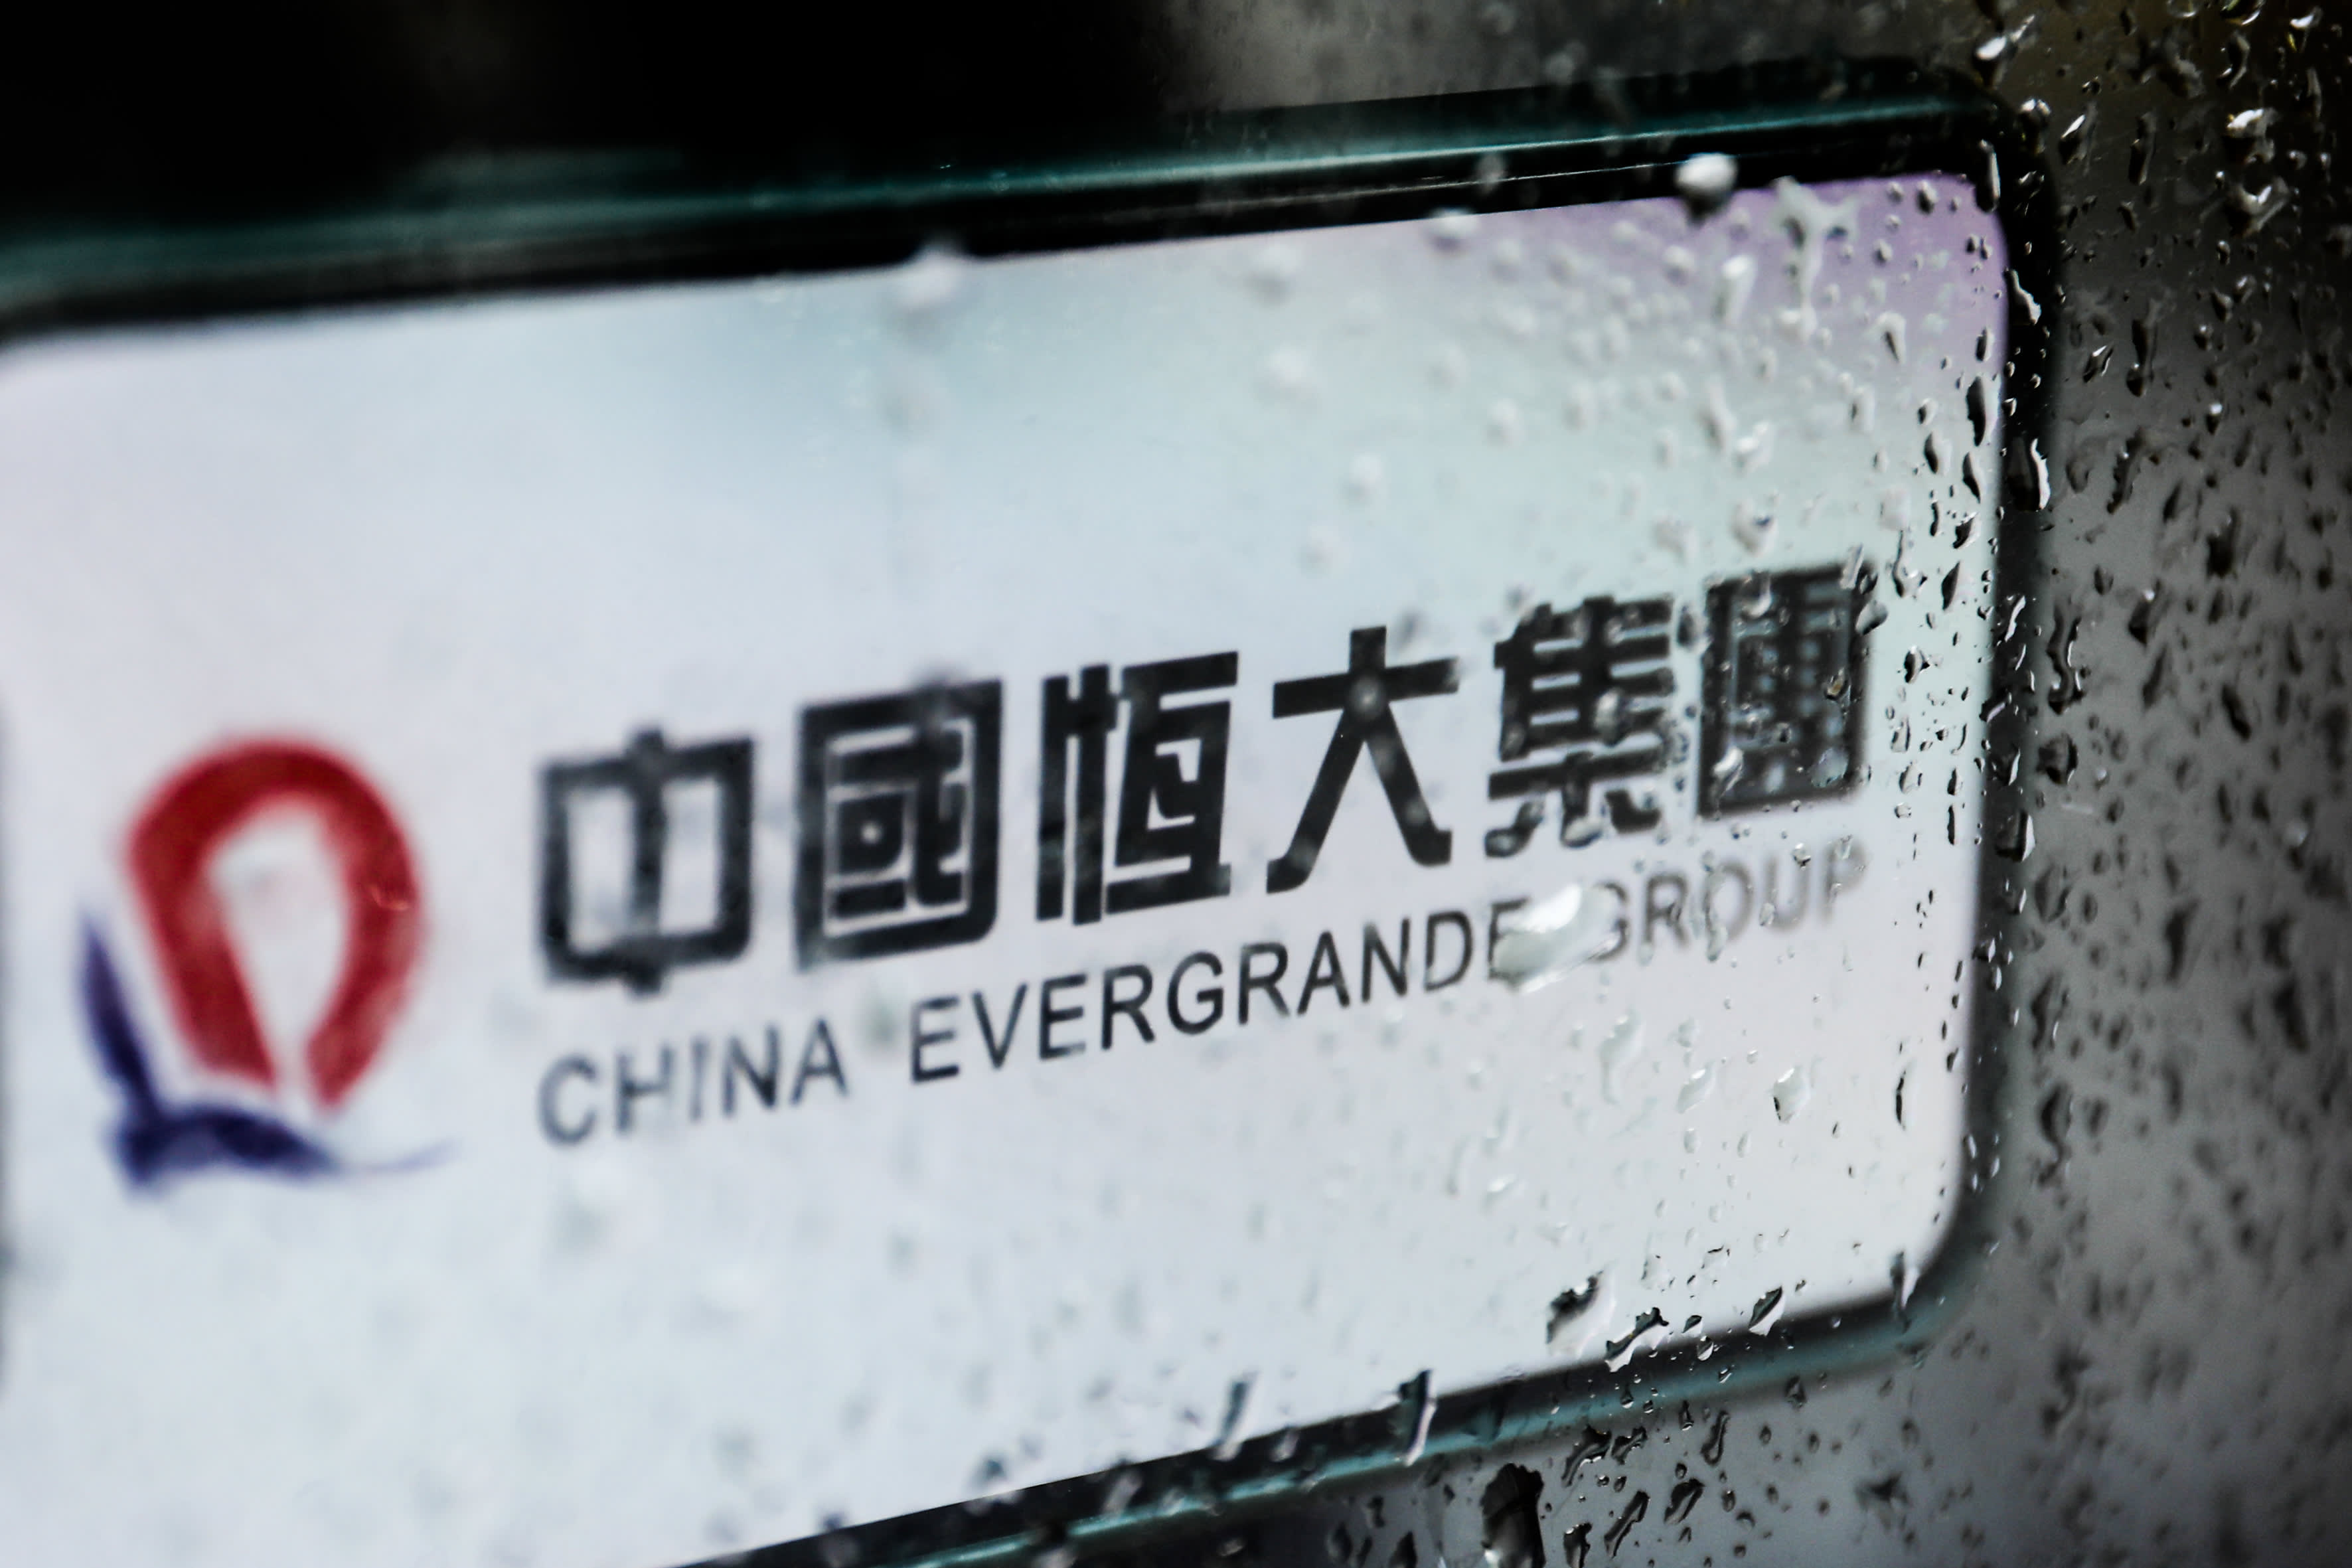 أزمة تصفية إيفرجراند لن تكون لحظة ليمان في الصين: ليلاند